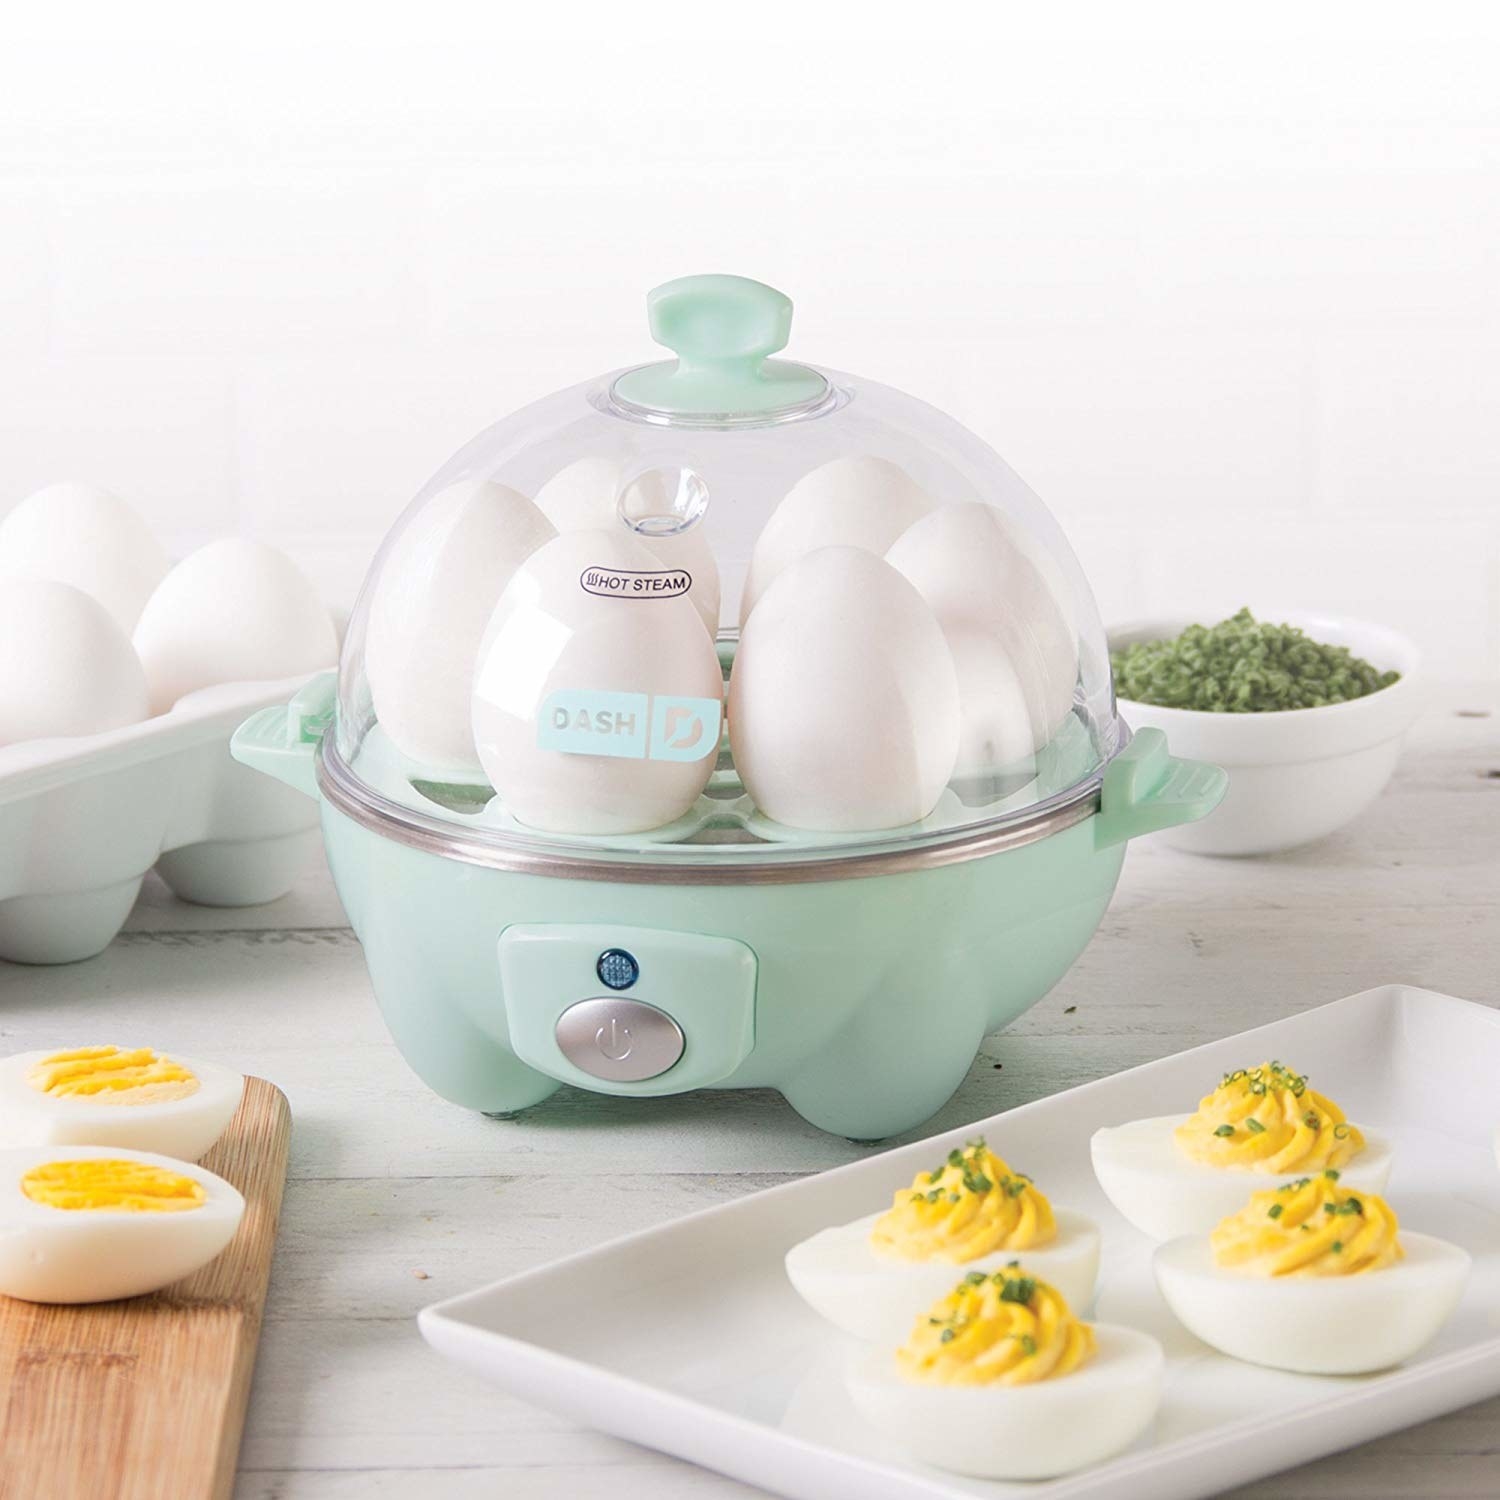 light blue domed egg cooker with six eggs inside